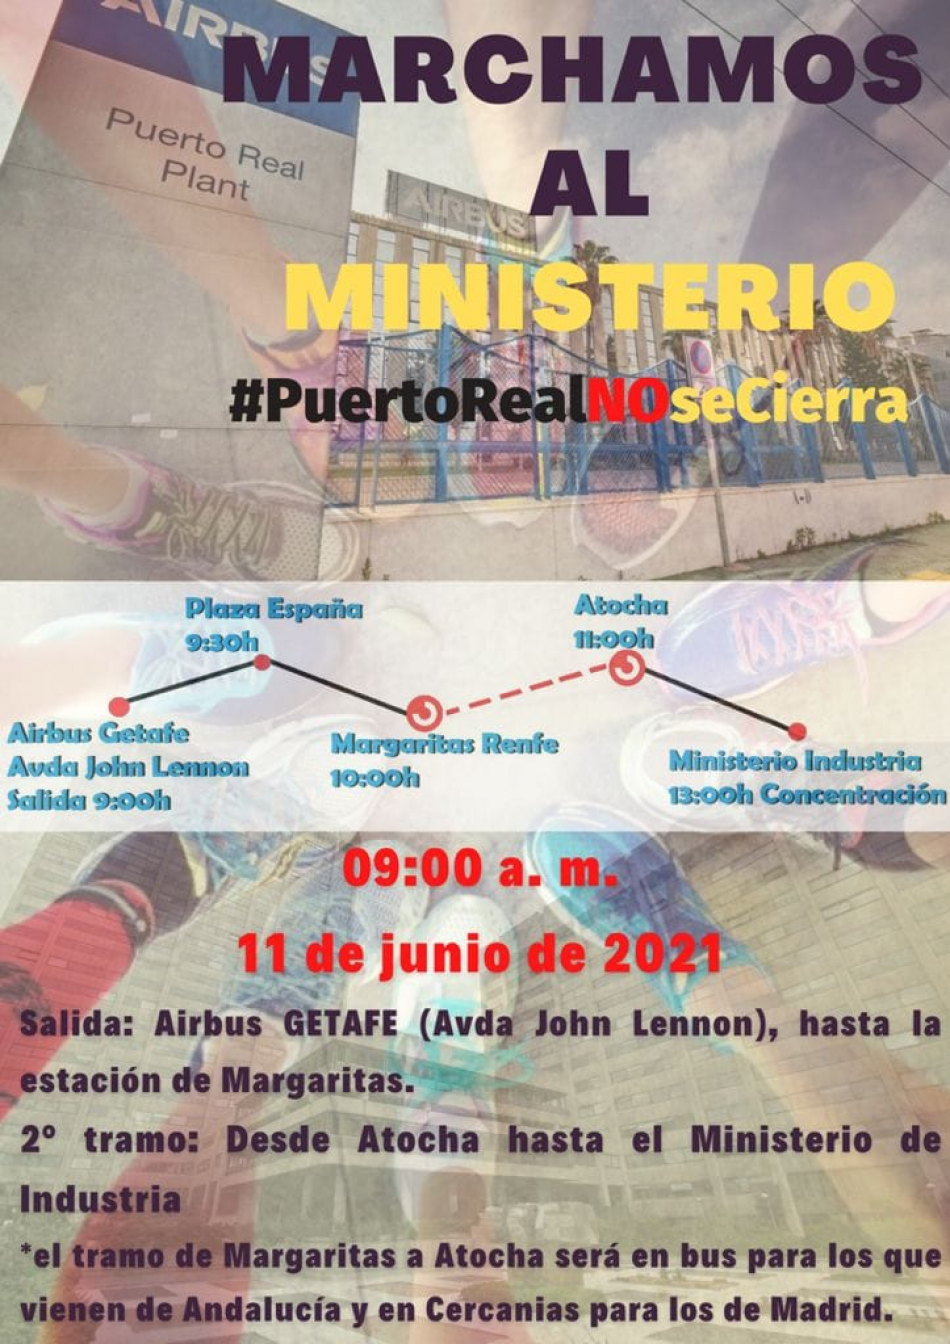 El Secretario General de FESIM-CGT llama a marchar al Ministerio de Industria el 11 de mayo: #PuertoRealNOseCierra